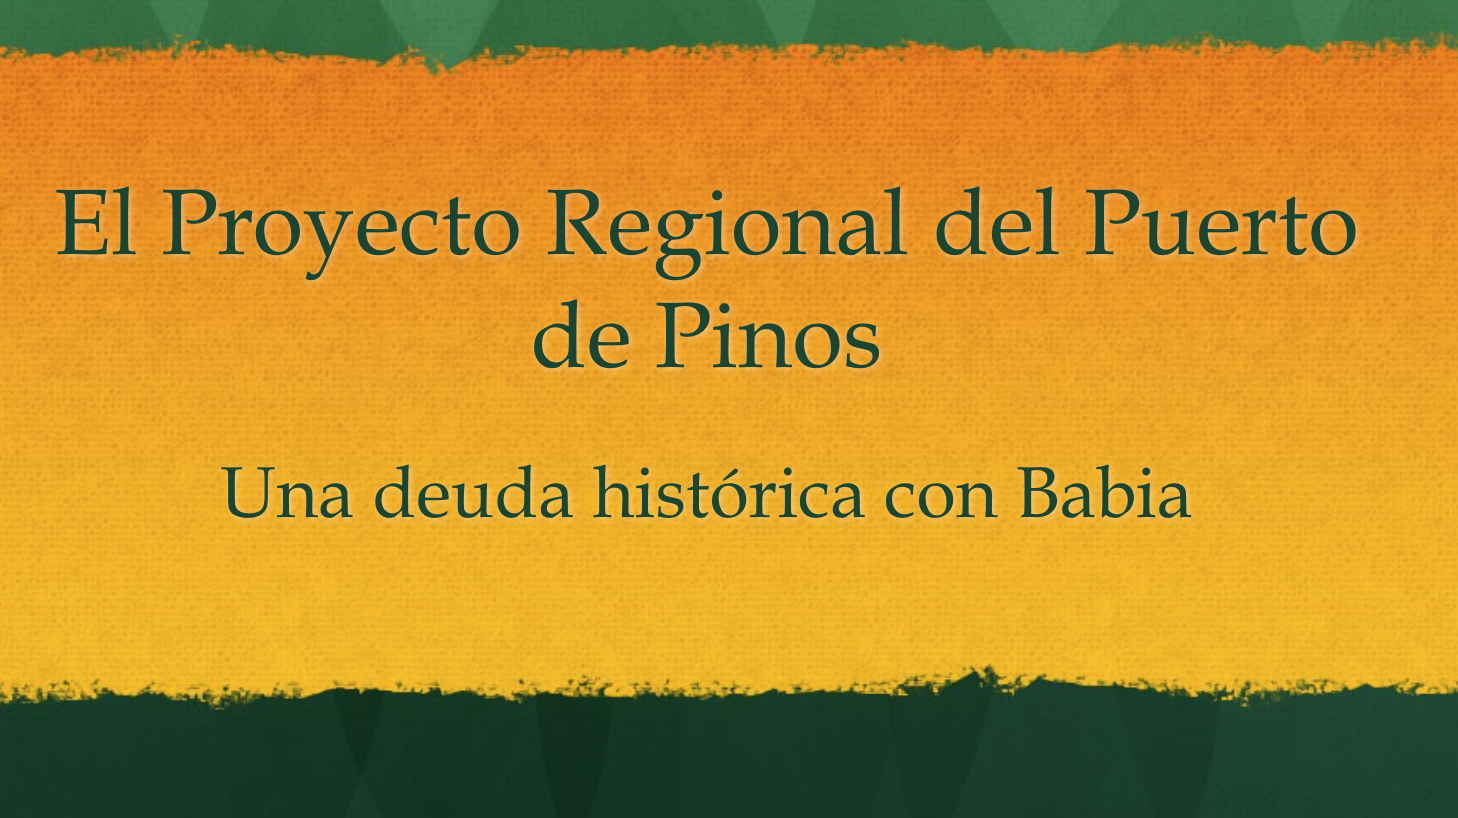 Proyecto Regional del Puerto de Pinos: Las razones para expropiar al Ayuntamiento de Mieres